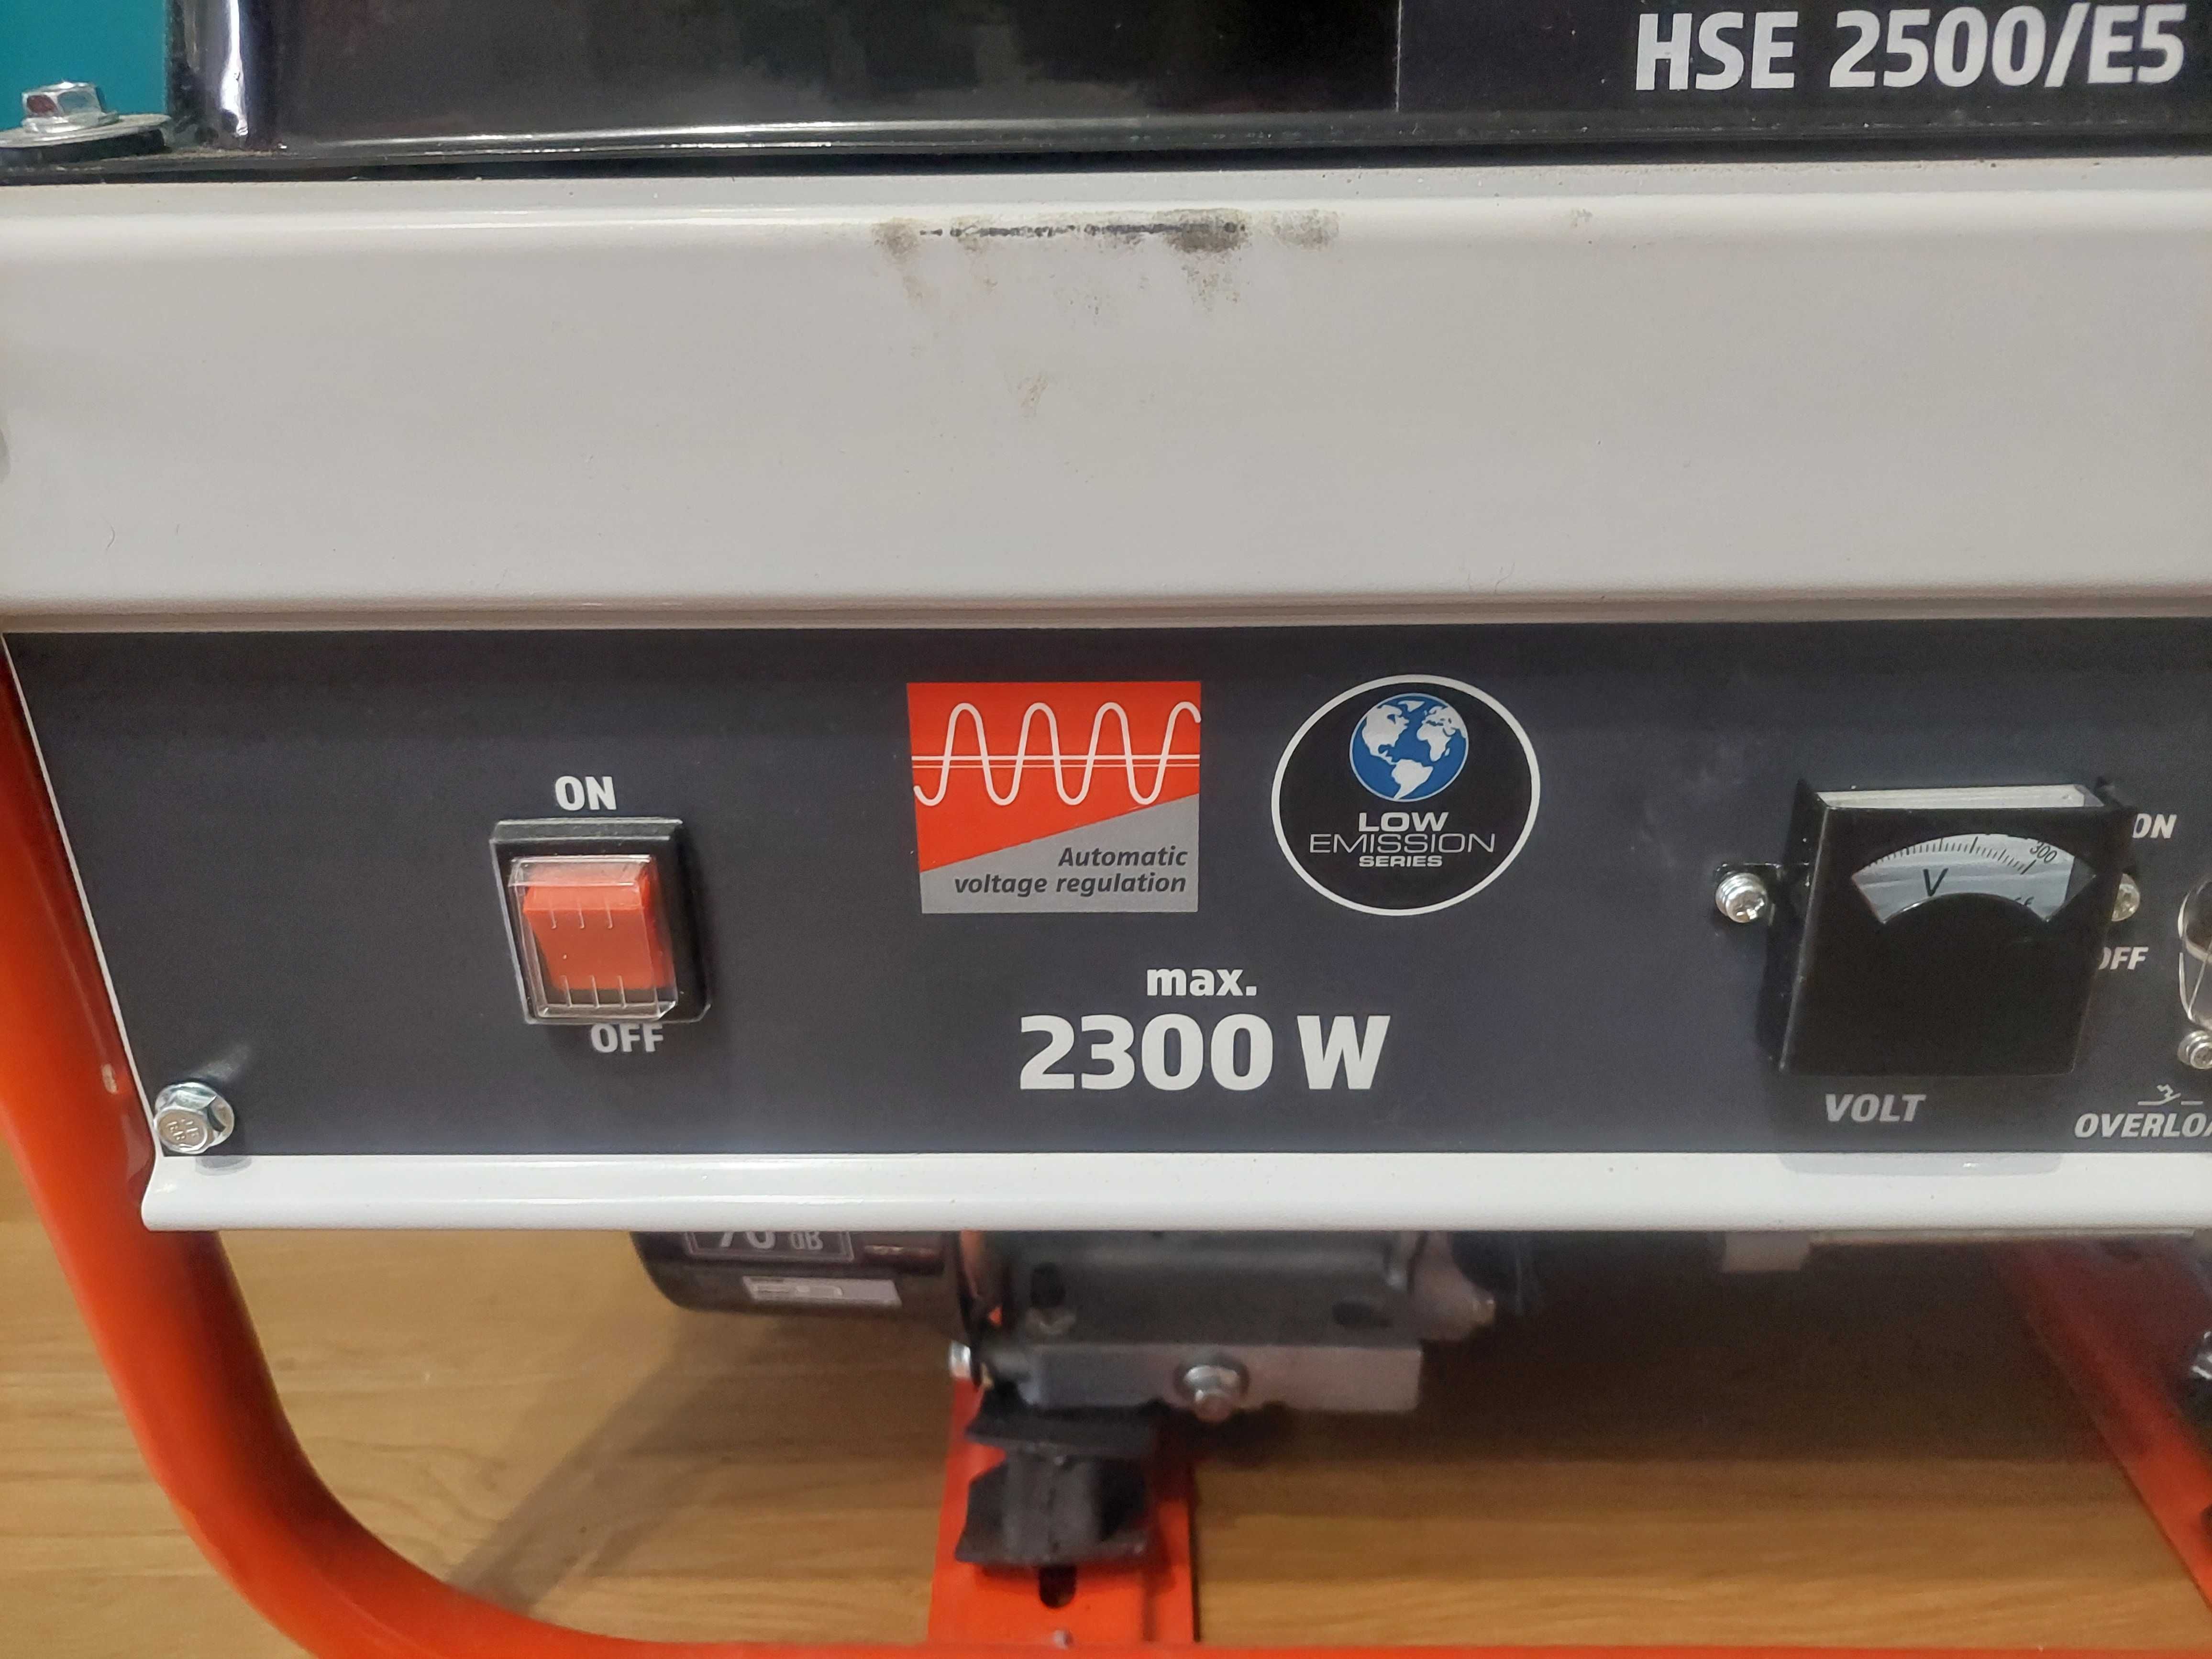 AGREGAT prądotwórczy HERKULES HSE 2500/E5